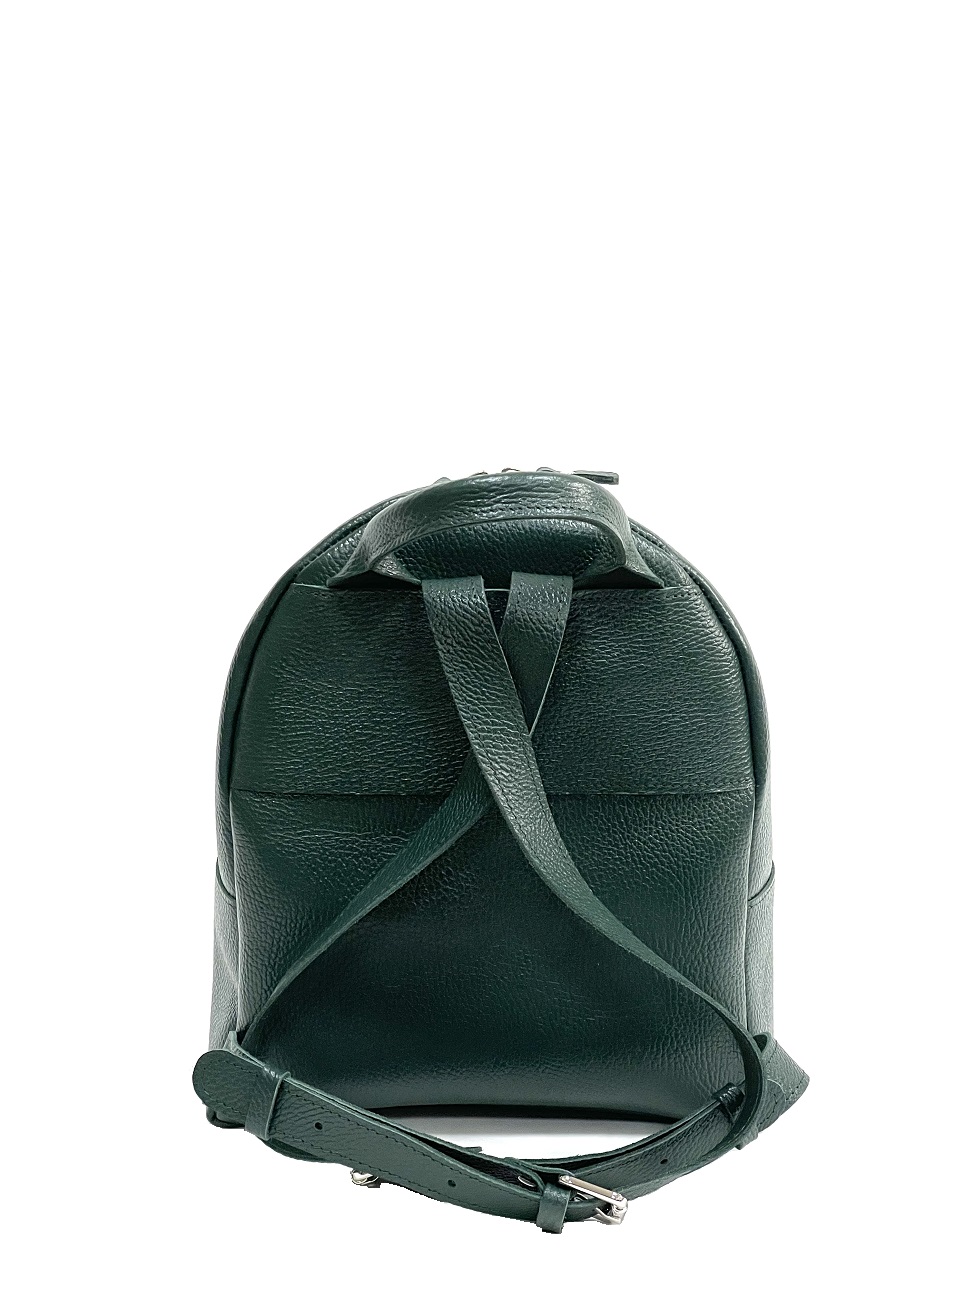 Женский рюкзак из натуральной кожи изумрудный B008 emerald grain